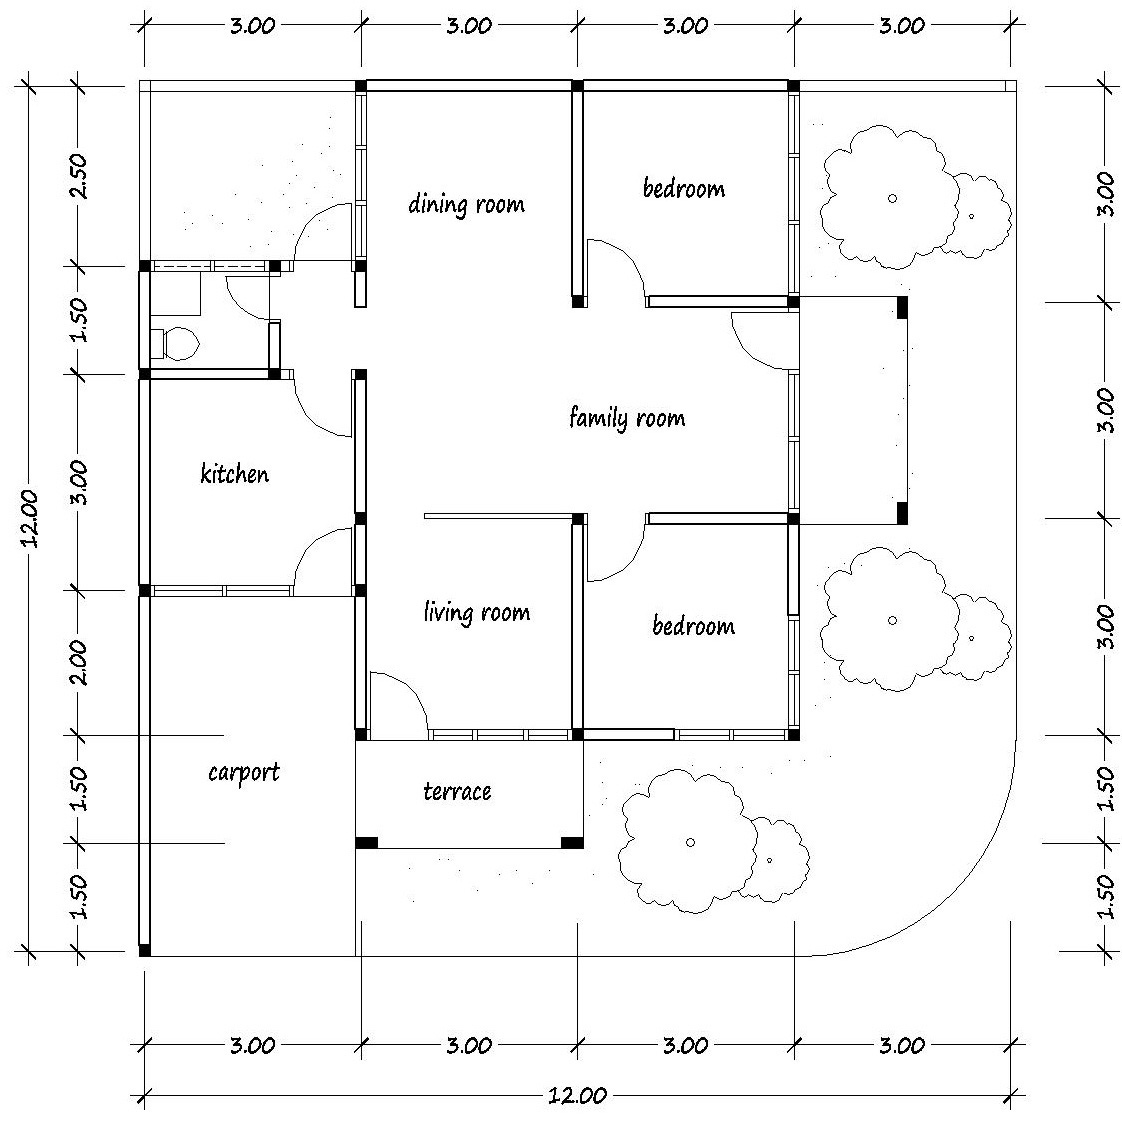 66 Desain Rumah Minimalis Ukuran 12x12  Desain Rumah 